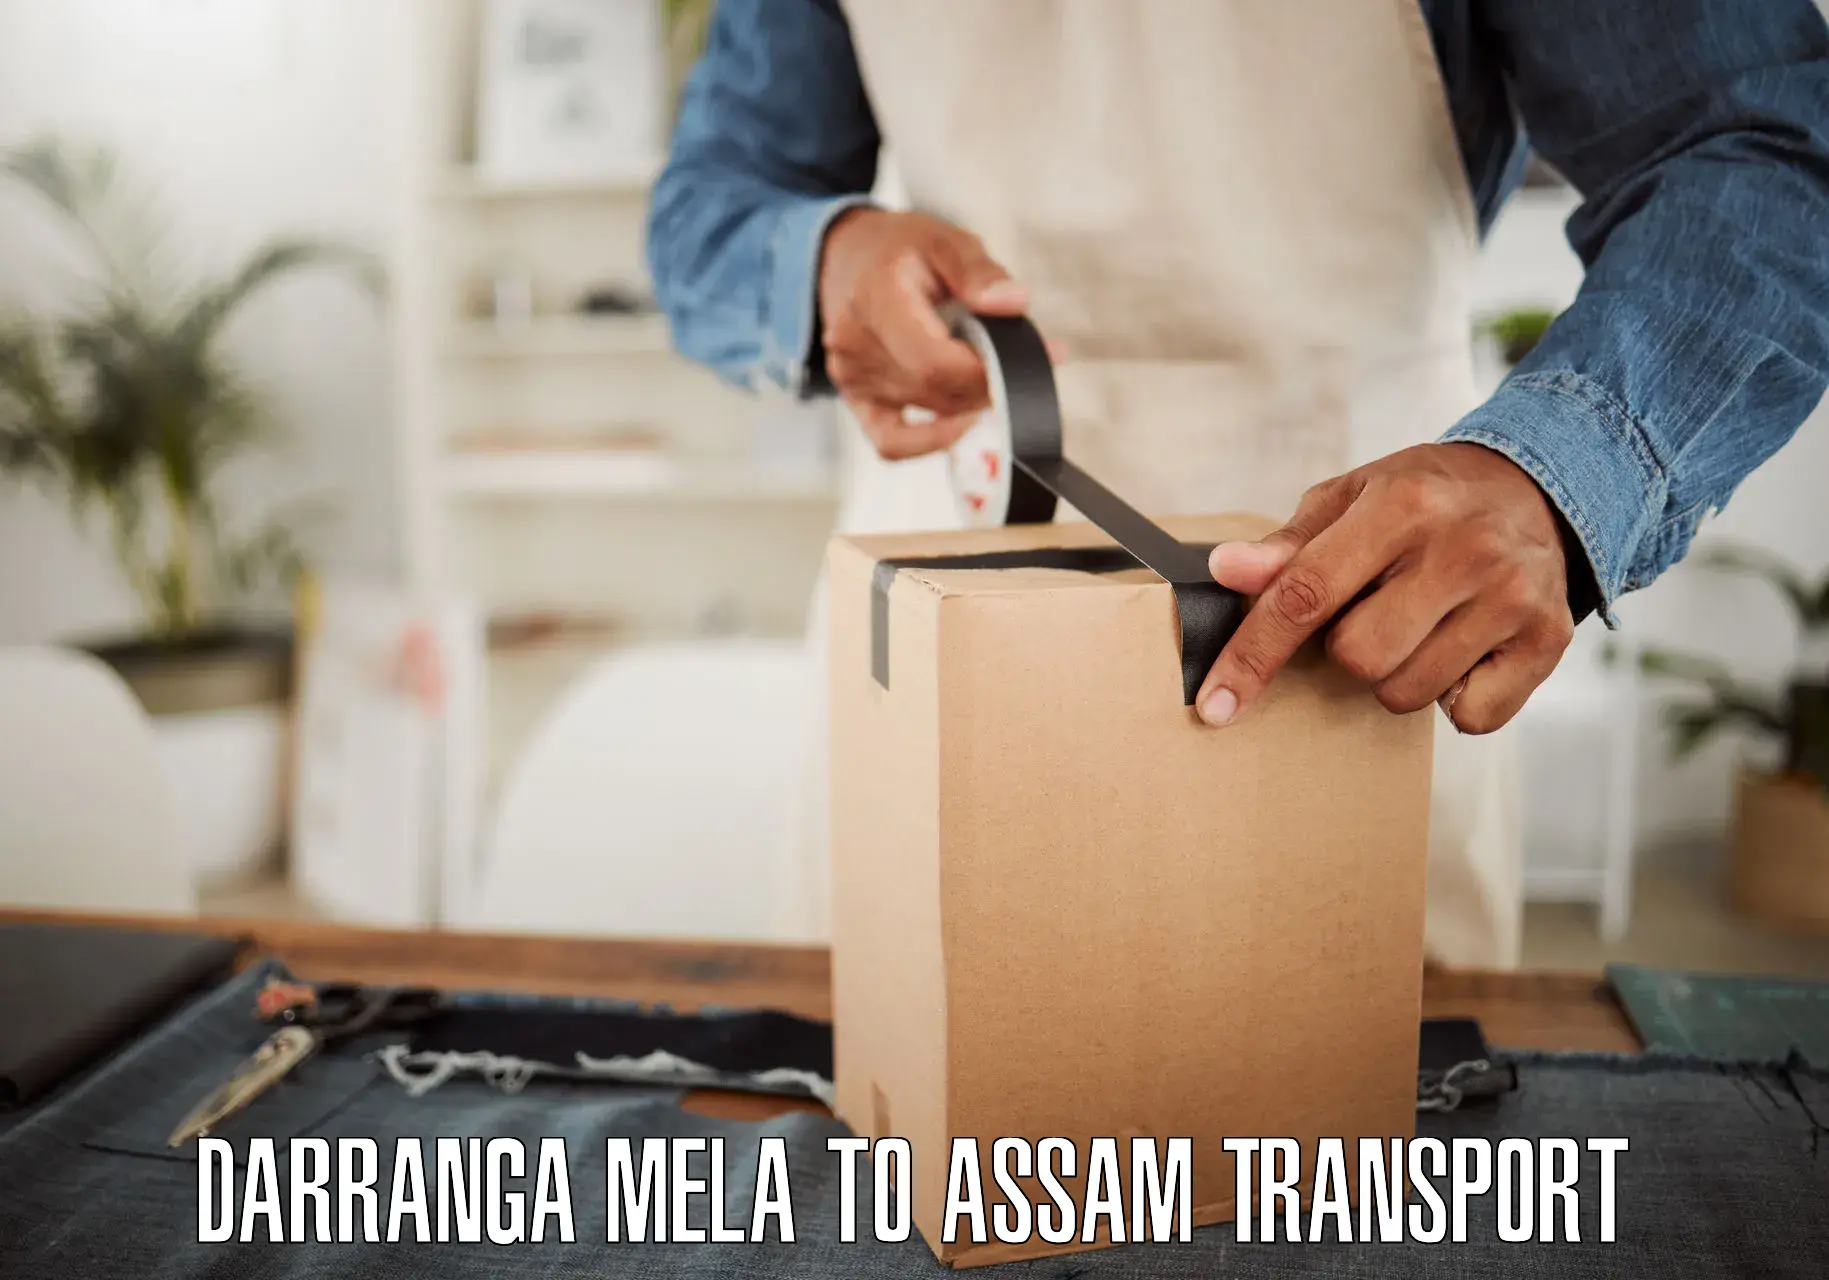 Transport in sharing Darranga Mela to Assam